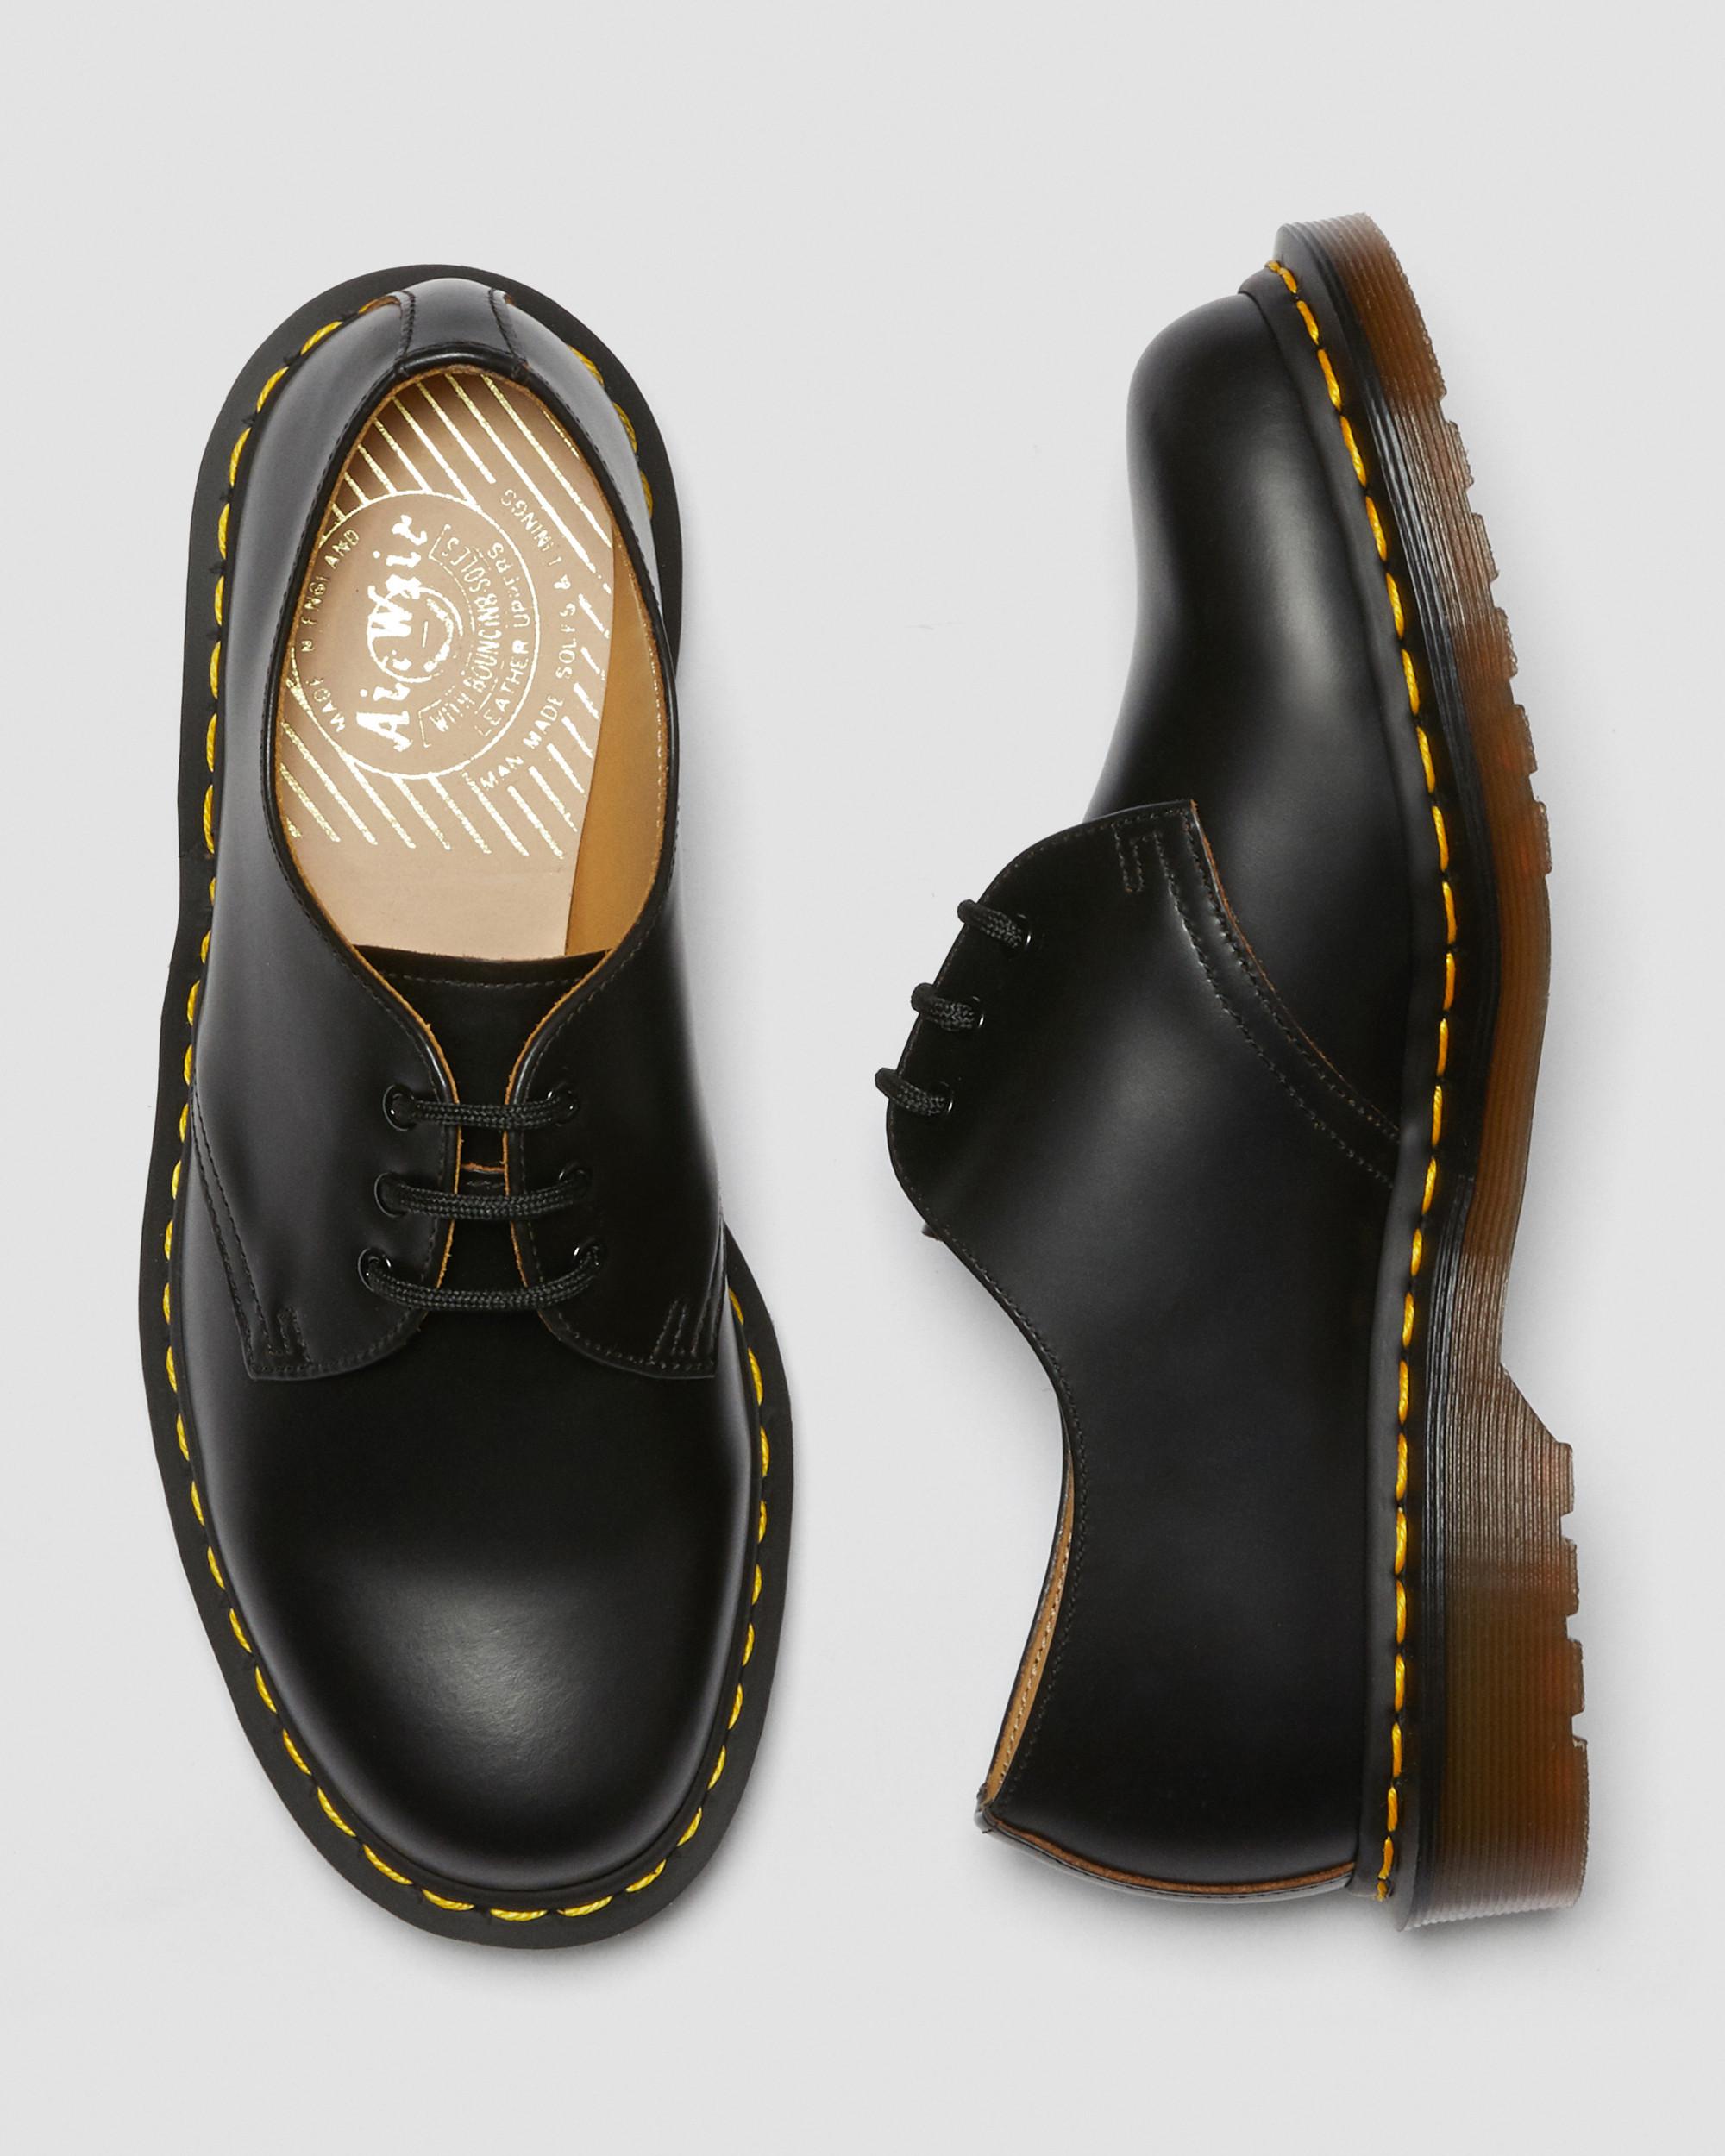 Vintage 1461 Quilon Leather Oxford ShoesVintage 1461 Quilon Leather Oxford Shoes Dr. Martens